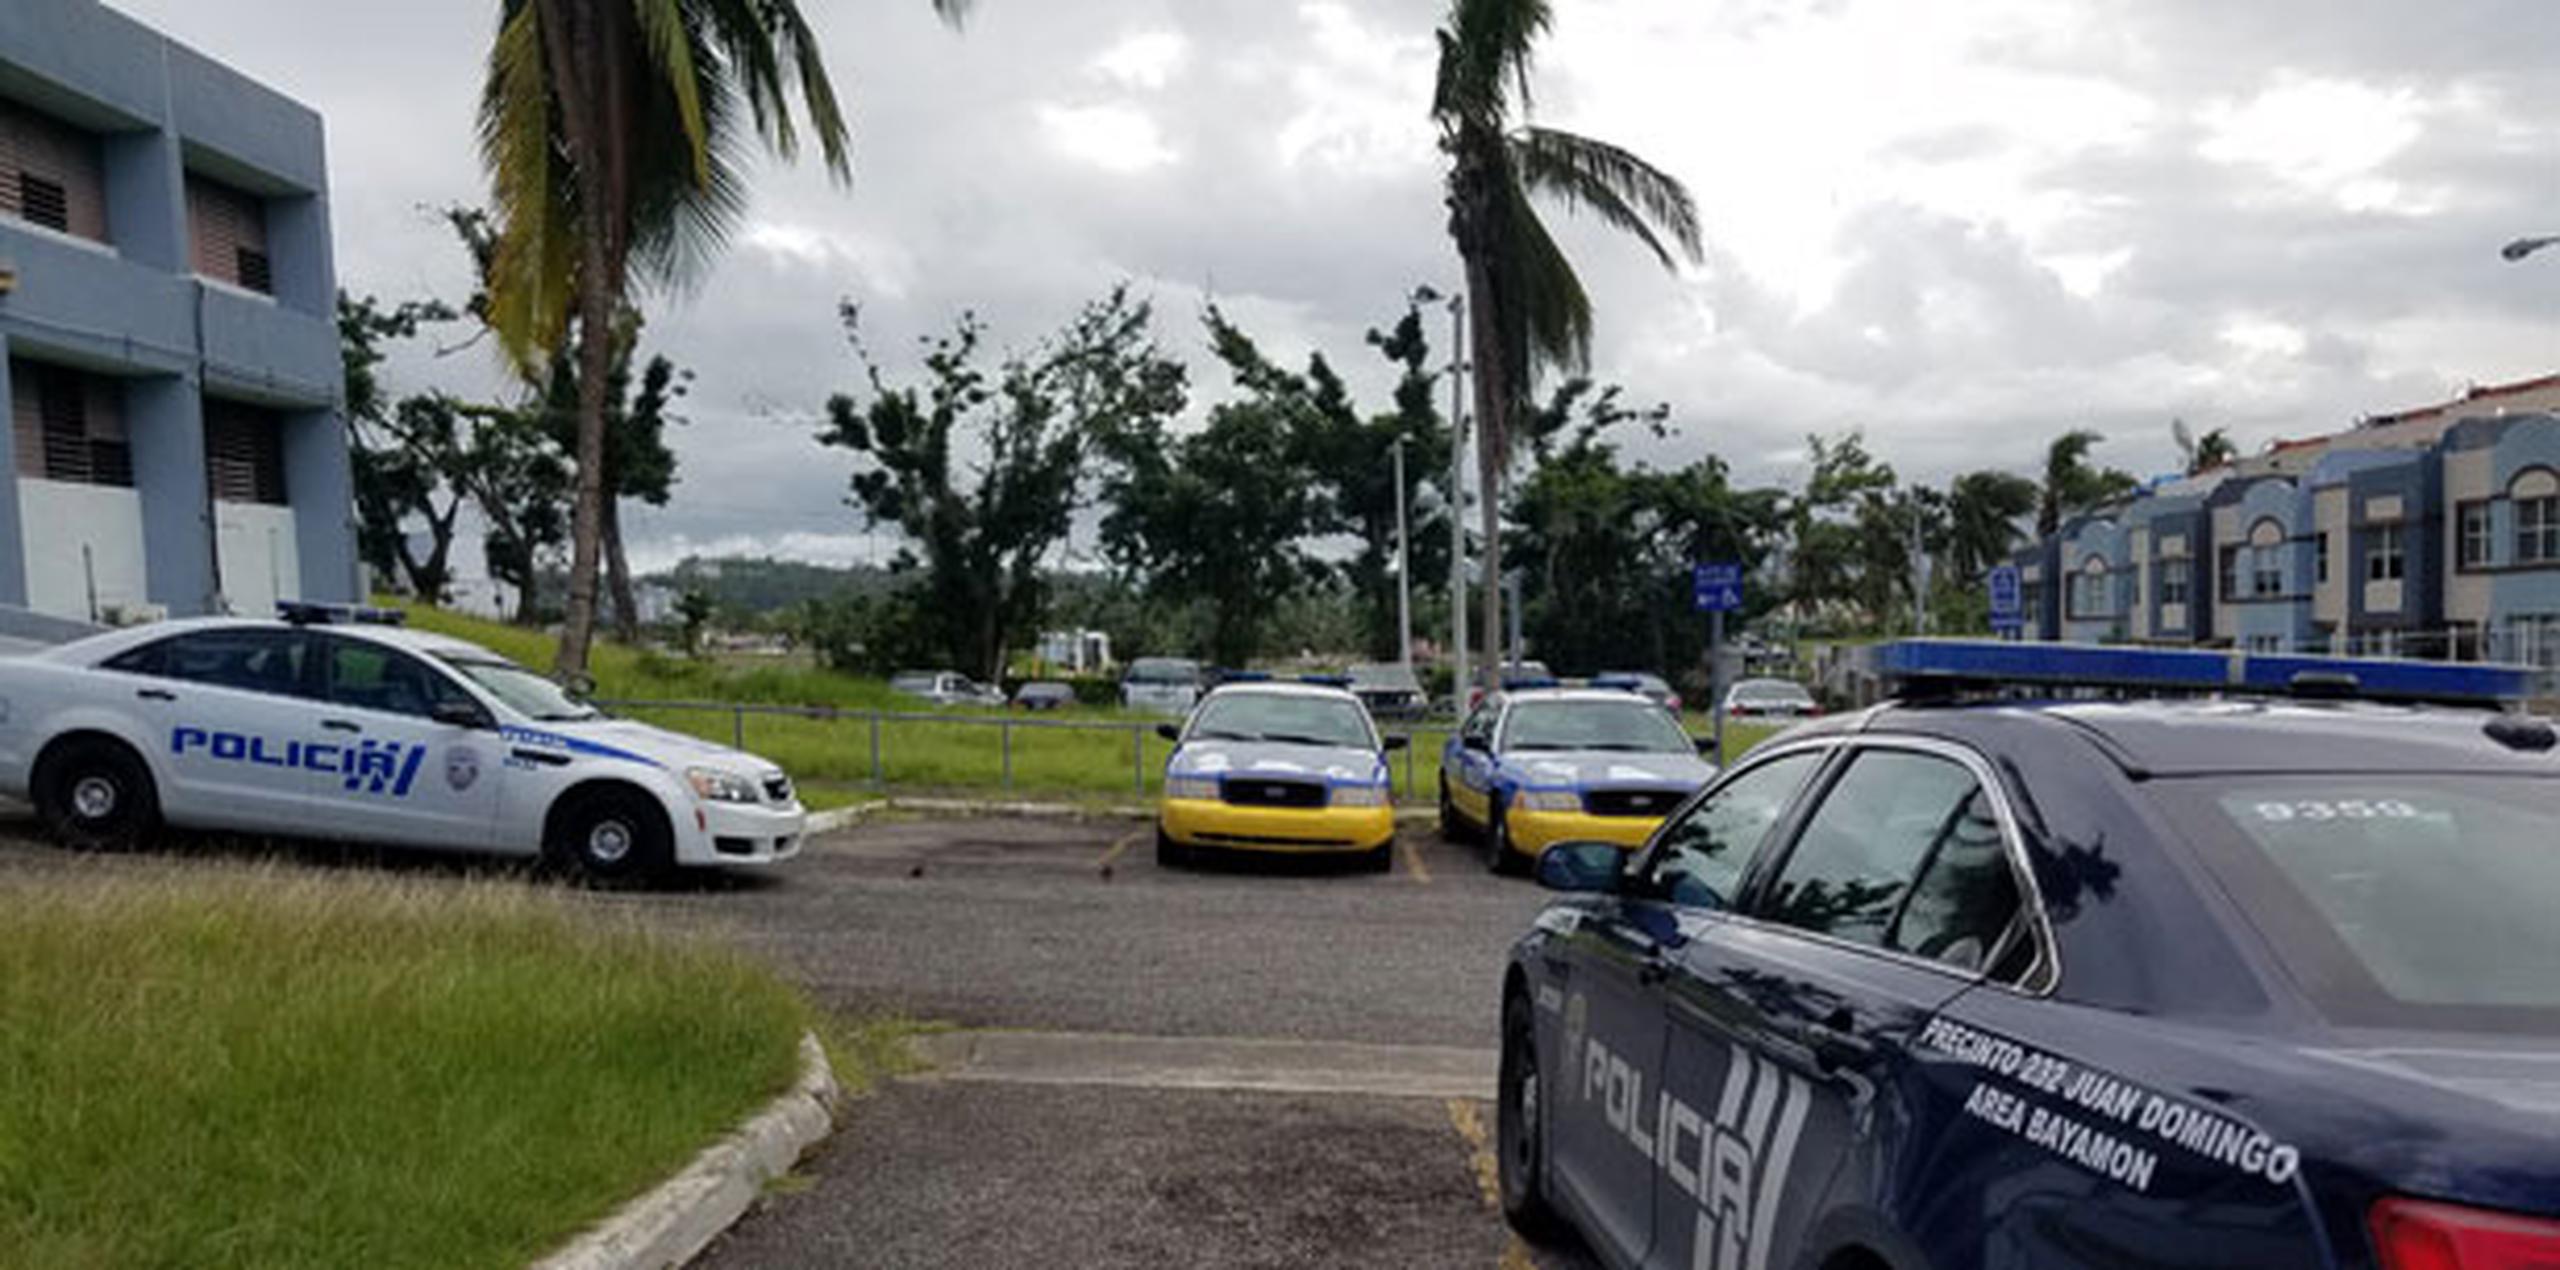 Las patrullas permanecían estacionadas en el cuartel del barrio Juan Domingo, que ayer operaba con un solo policía. (osman.perez@gfrmedia.com)